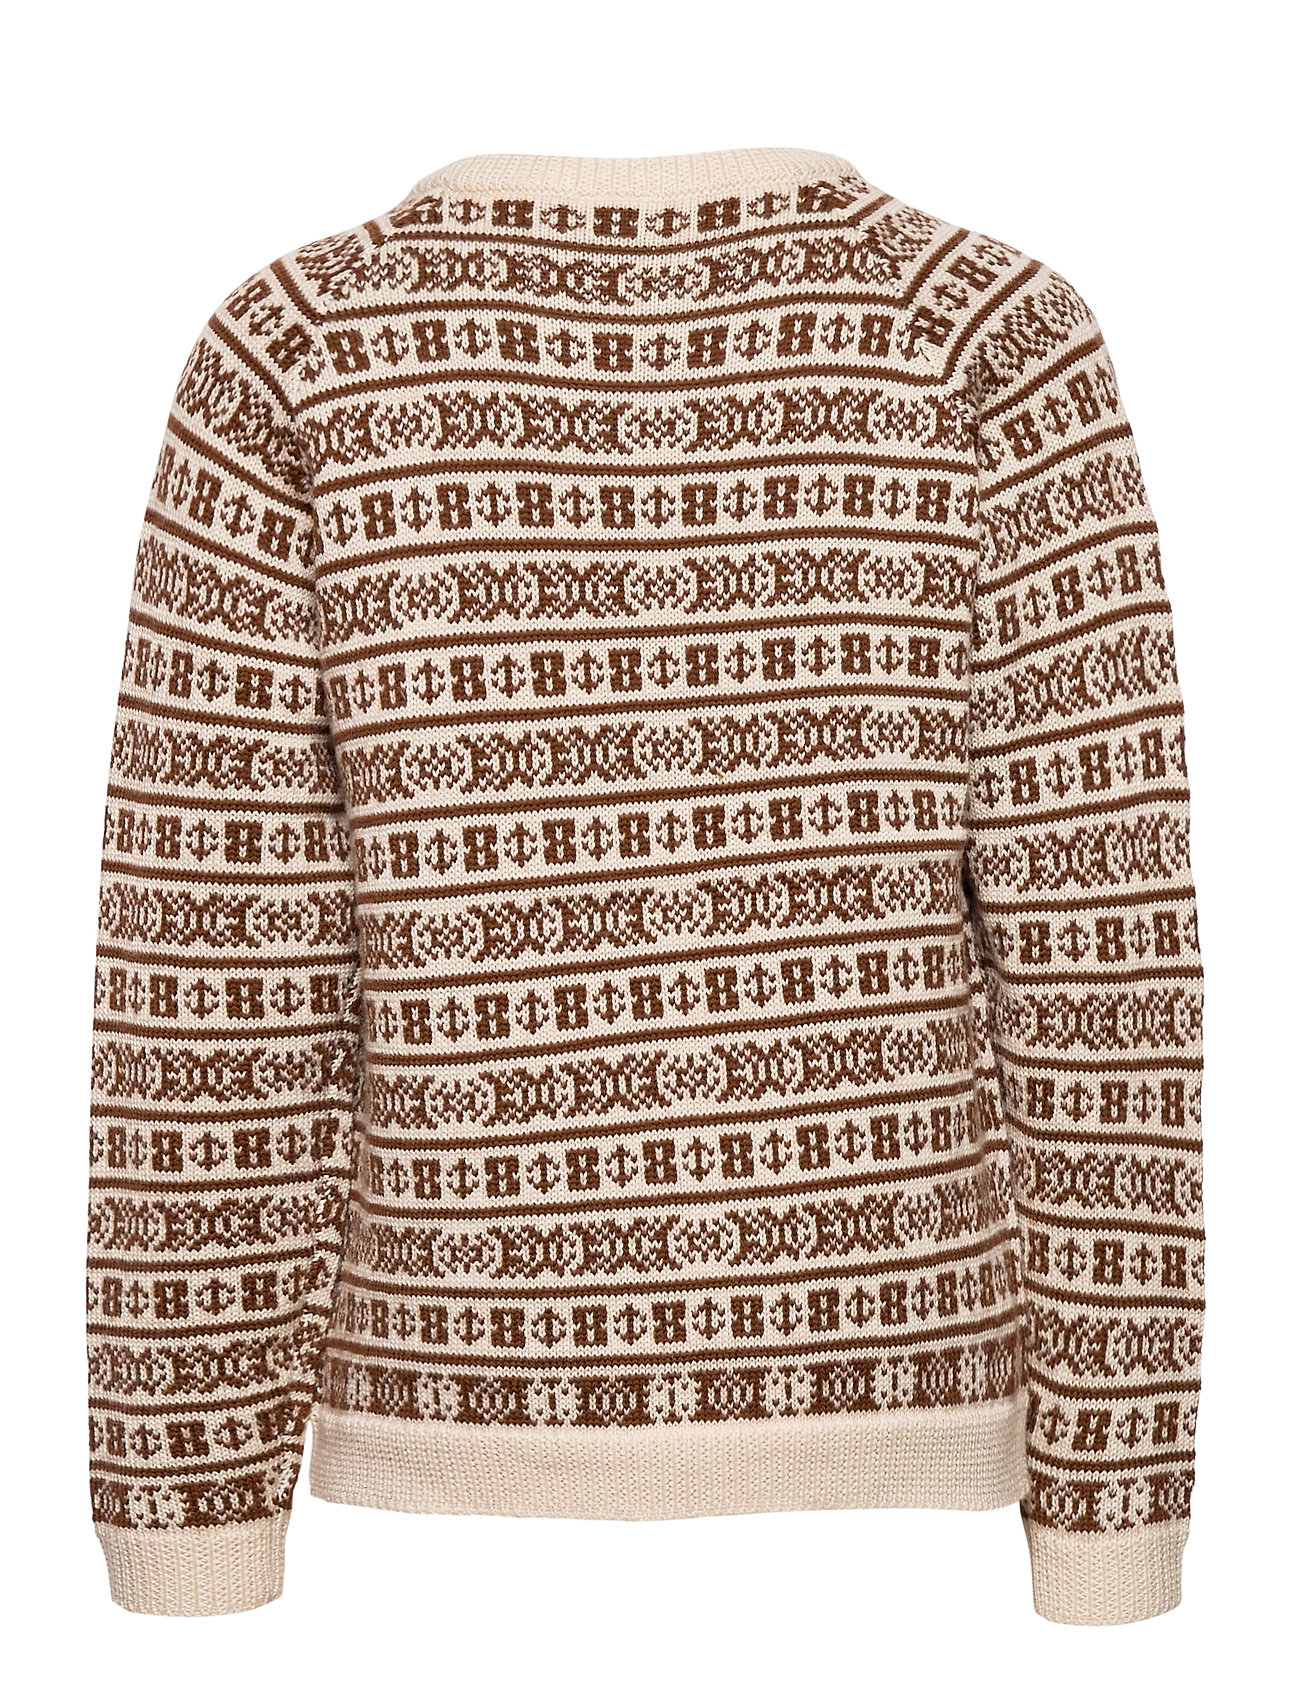 Afdeling arabisk champignon FUB pullovers – Jaquard Sweater Pullover Striktrøje Creme FUB til børn i  ECRU/UMBER - Pashion.dk